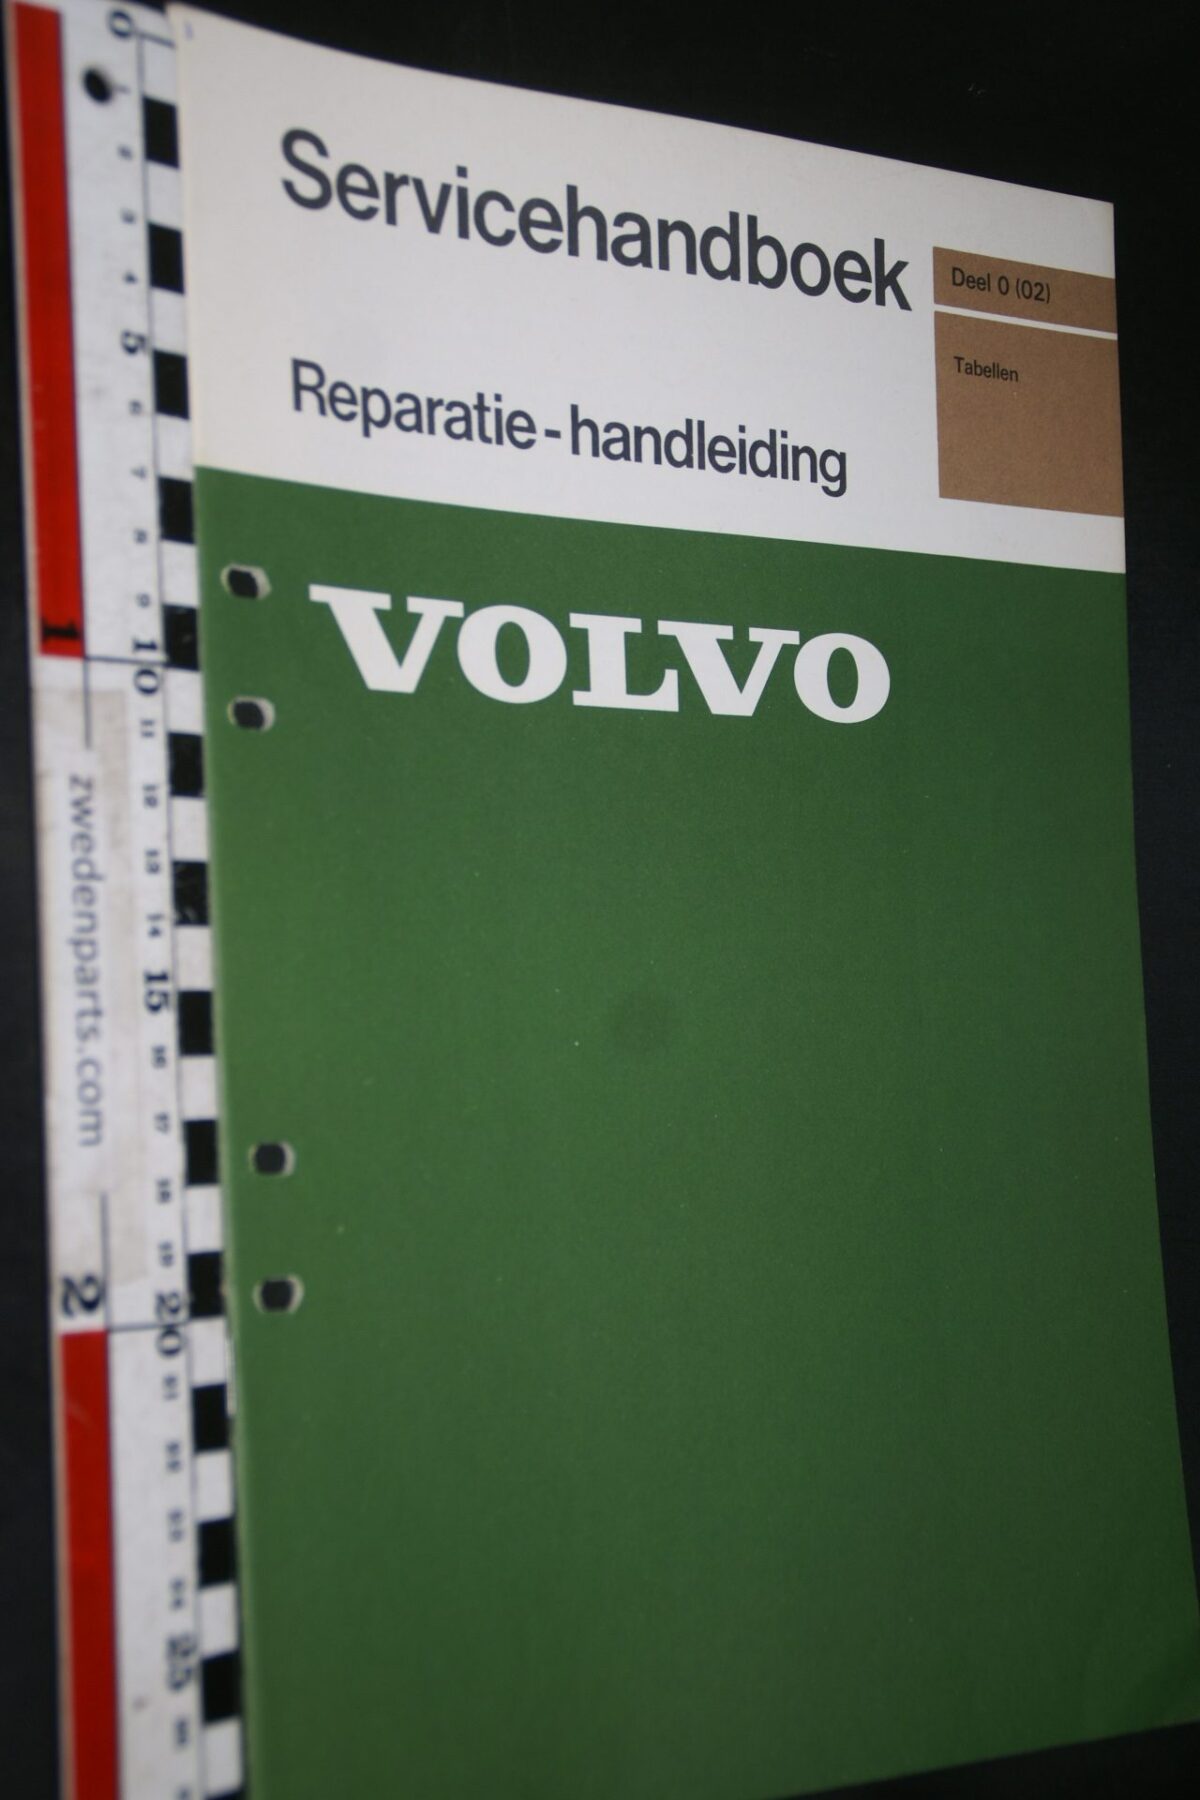 DSC03441 1976 handleiding Volvo tabellen 1 van 500 TP11419 1 rotated